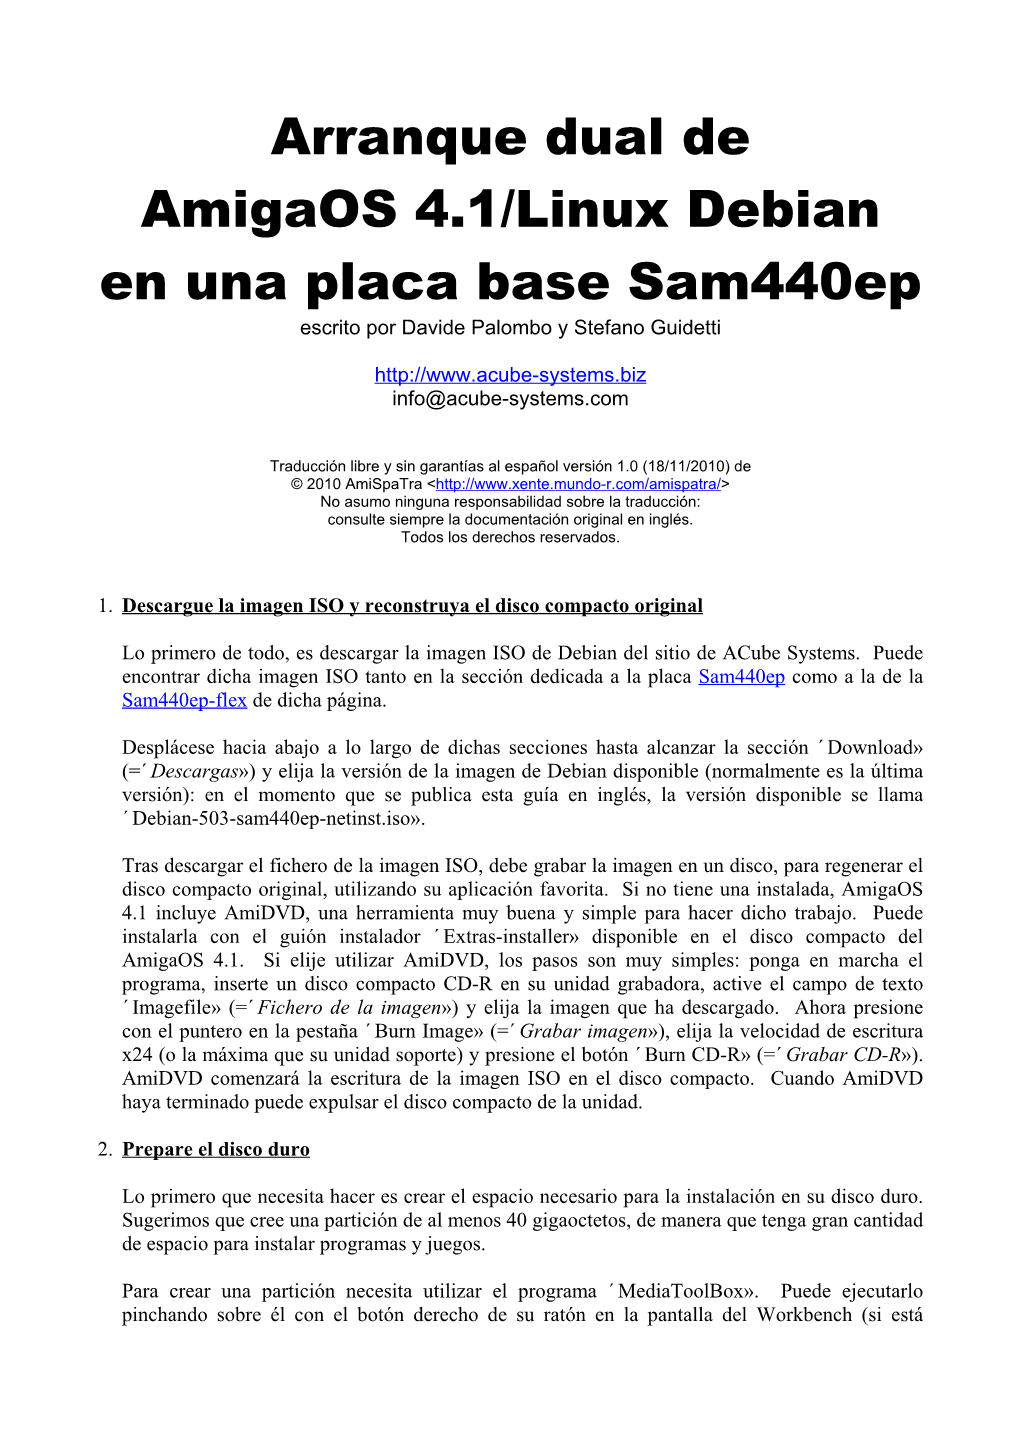 Arranque Dual De Amigaos 4.1/Linux Debian En Una Placa Base Sam440ep Escrito Por Davide Palombo Y Stefano Guidetti